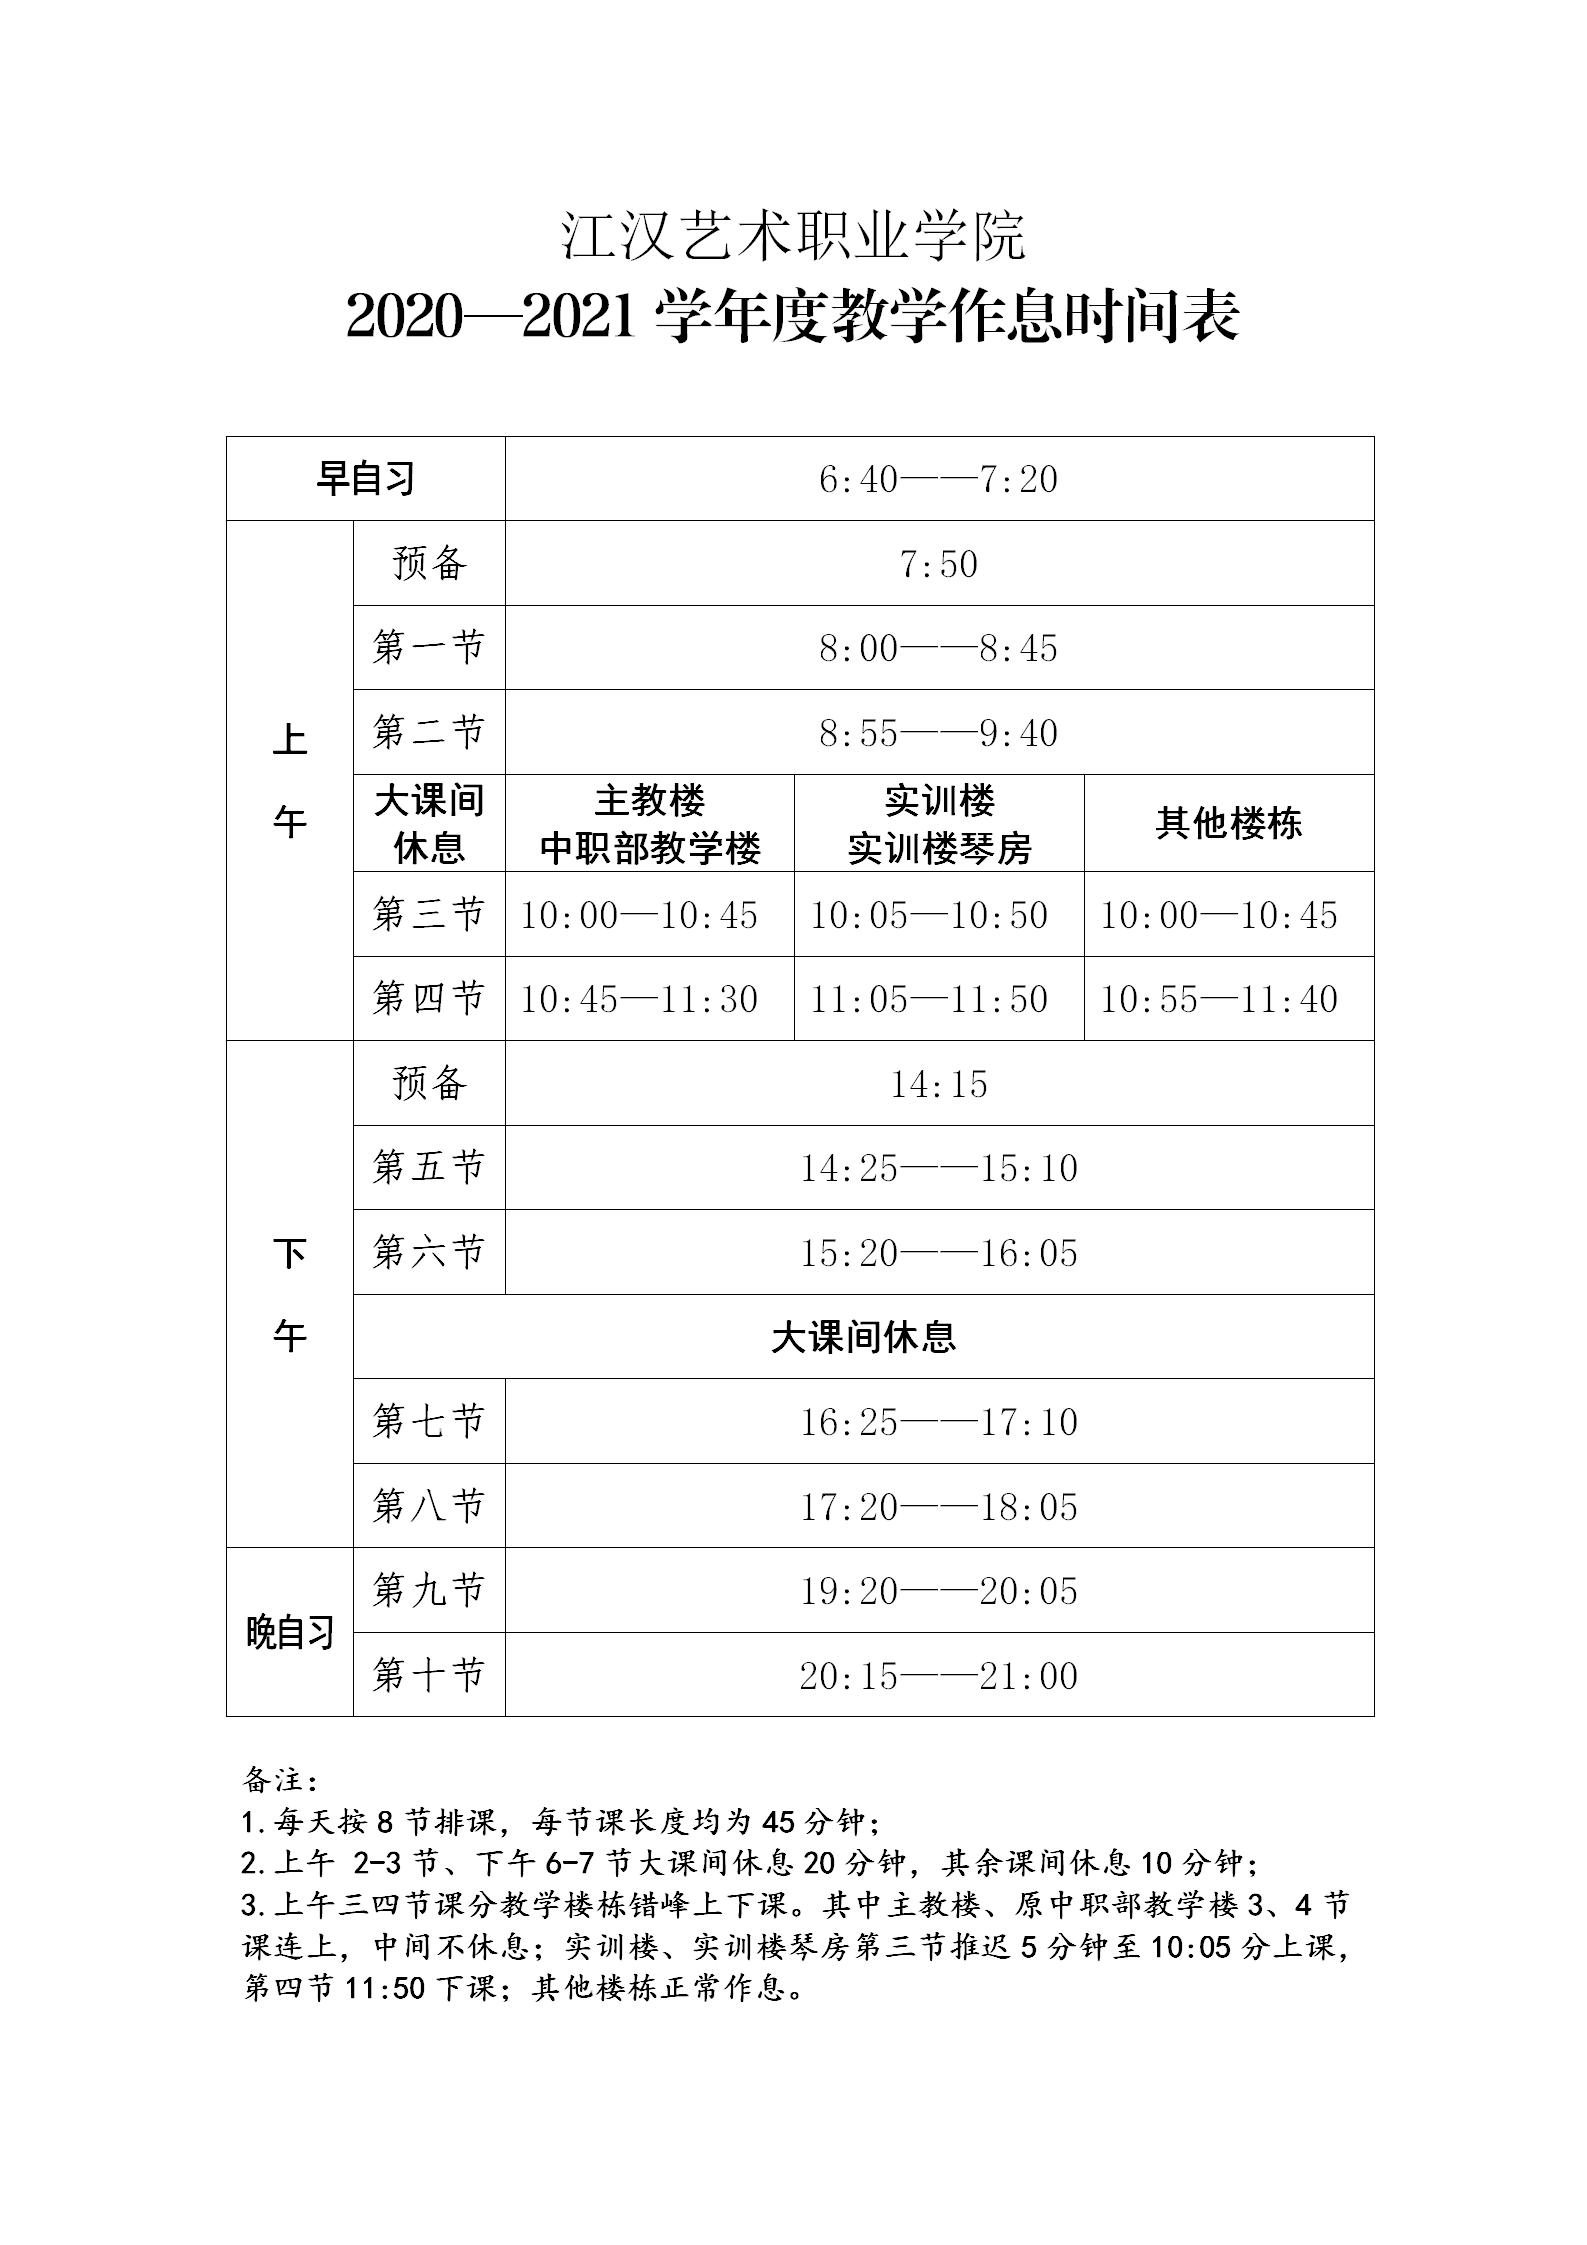 江汉艺术职业学院2020—2021年度教学作息时间表_01.jpg